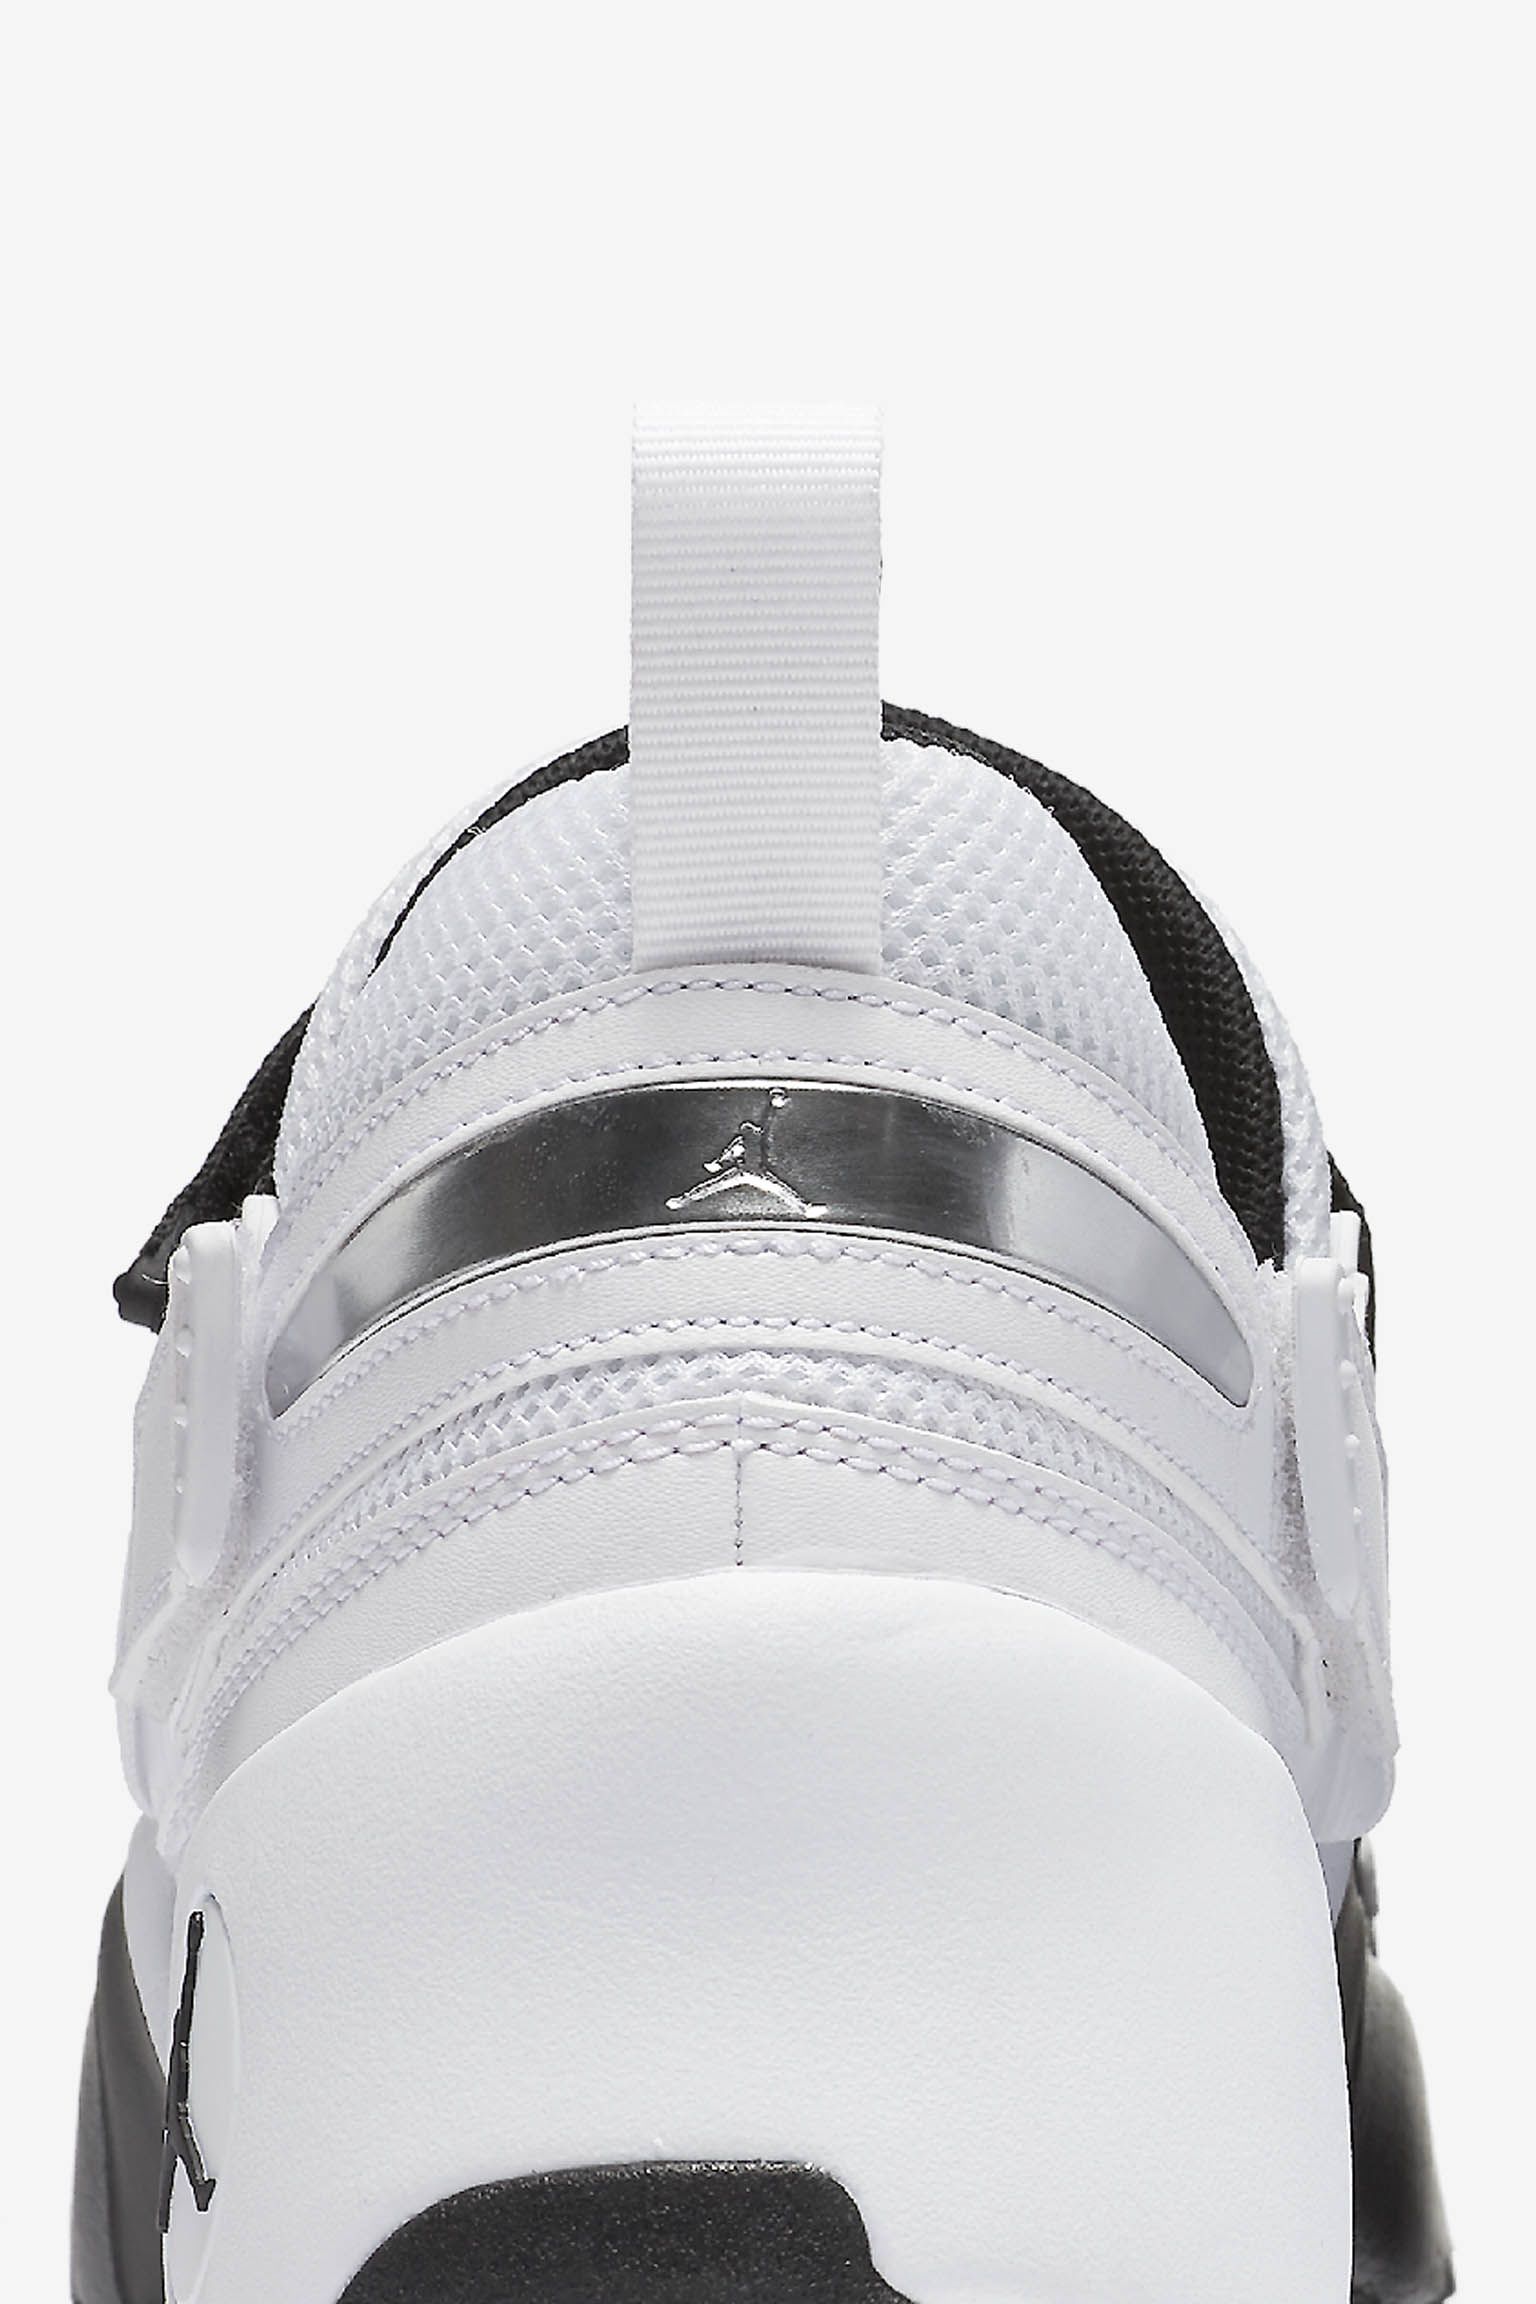 ジョーダン トランナー LX 'Black & White'. Nike SNKRS JP